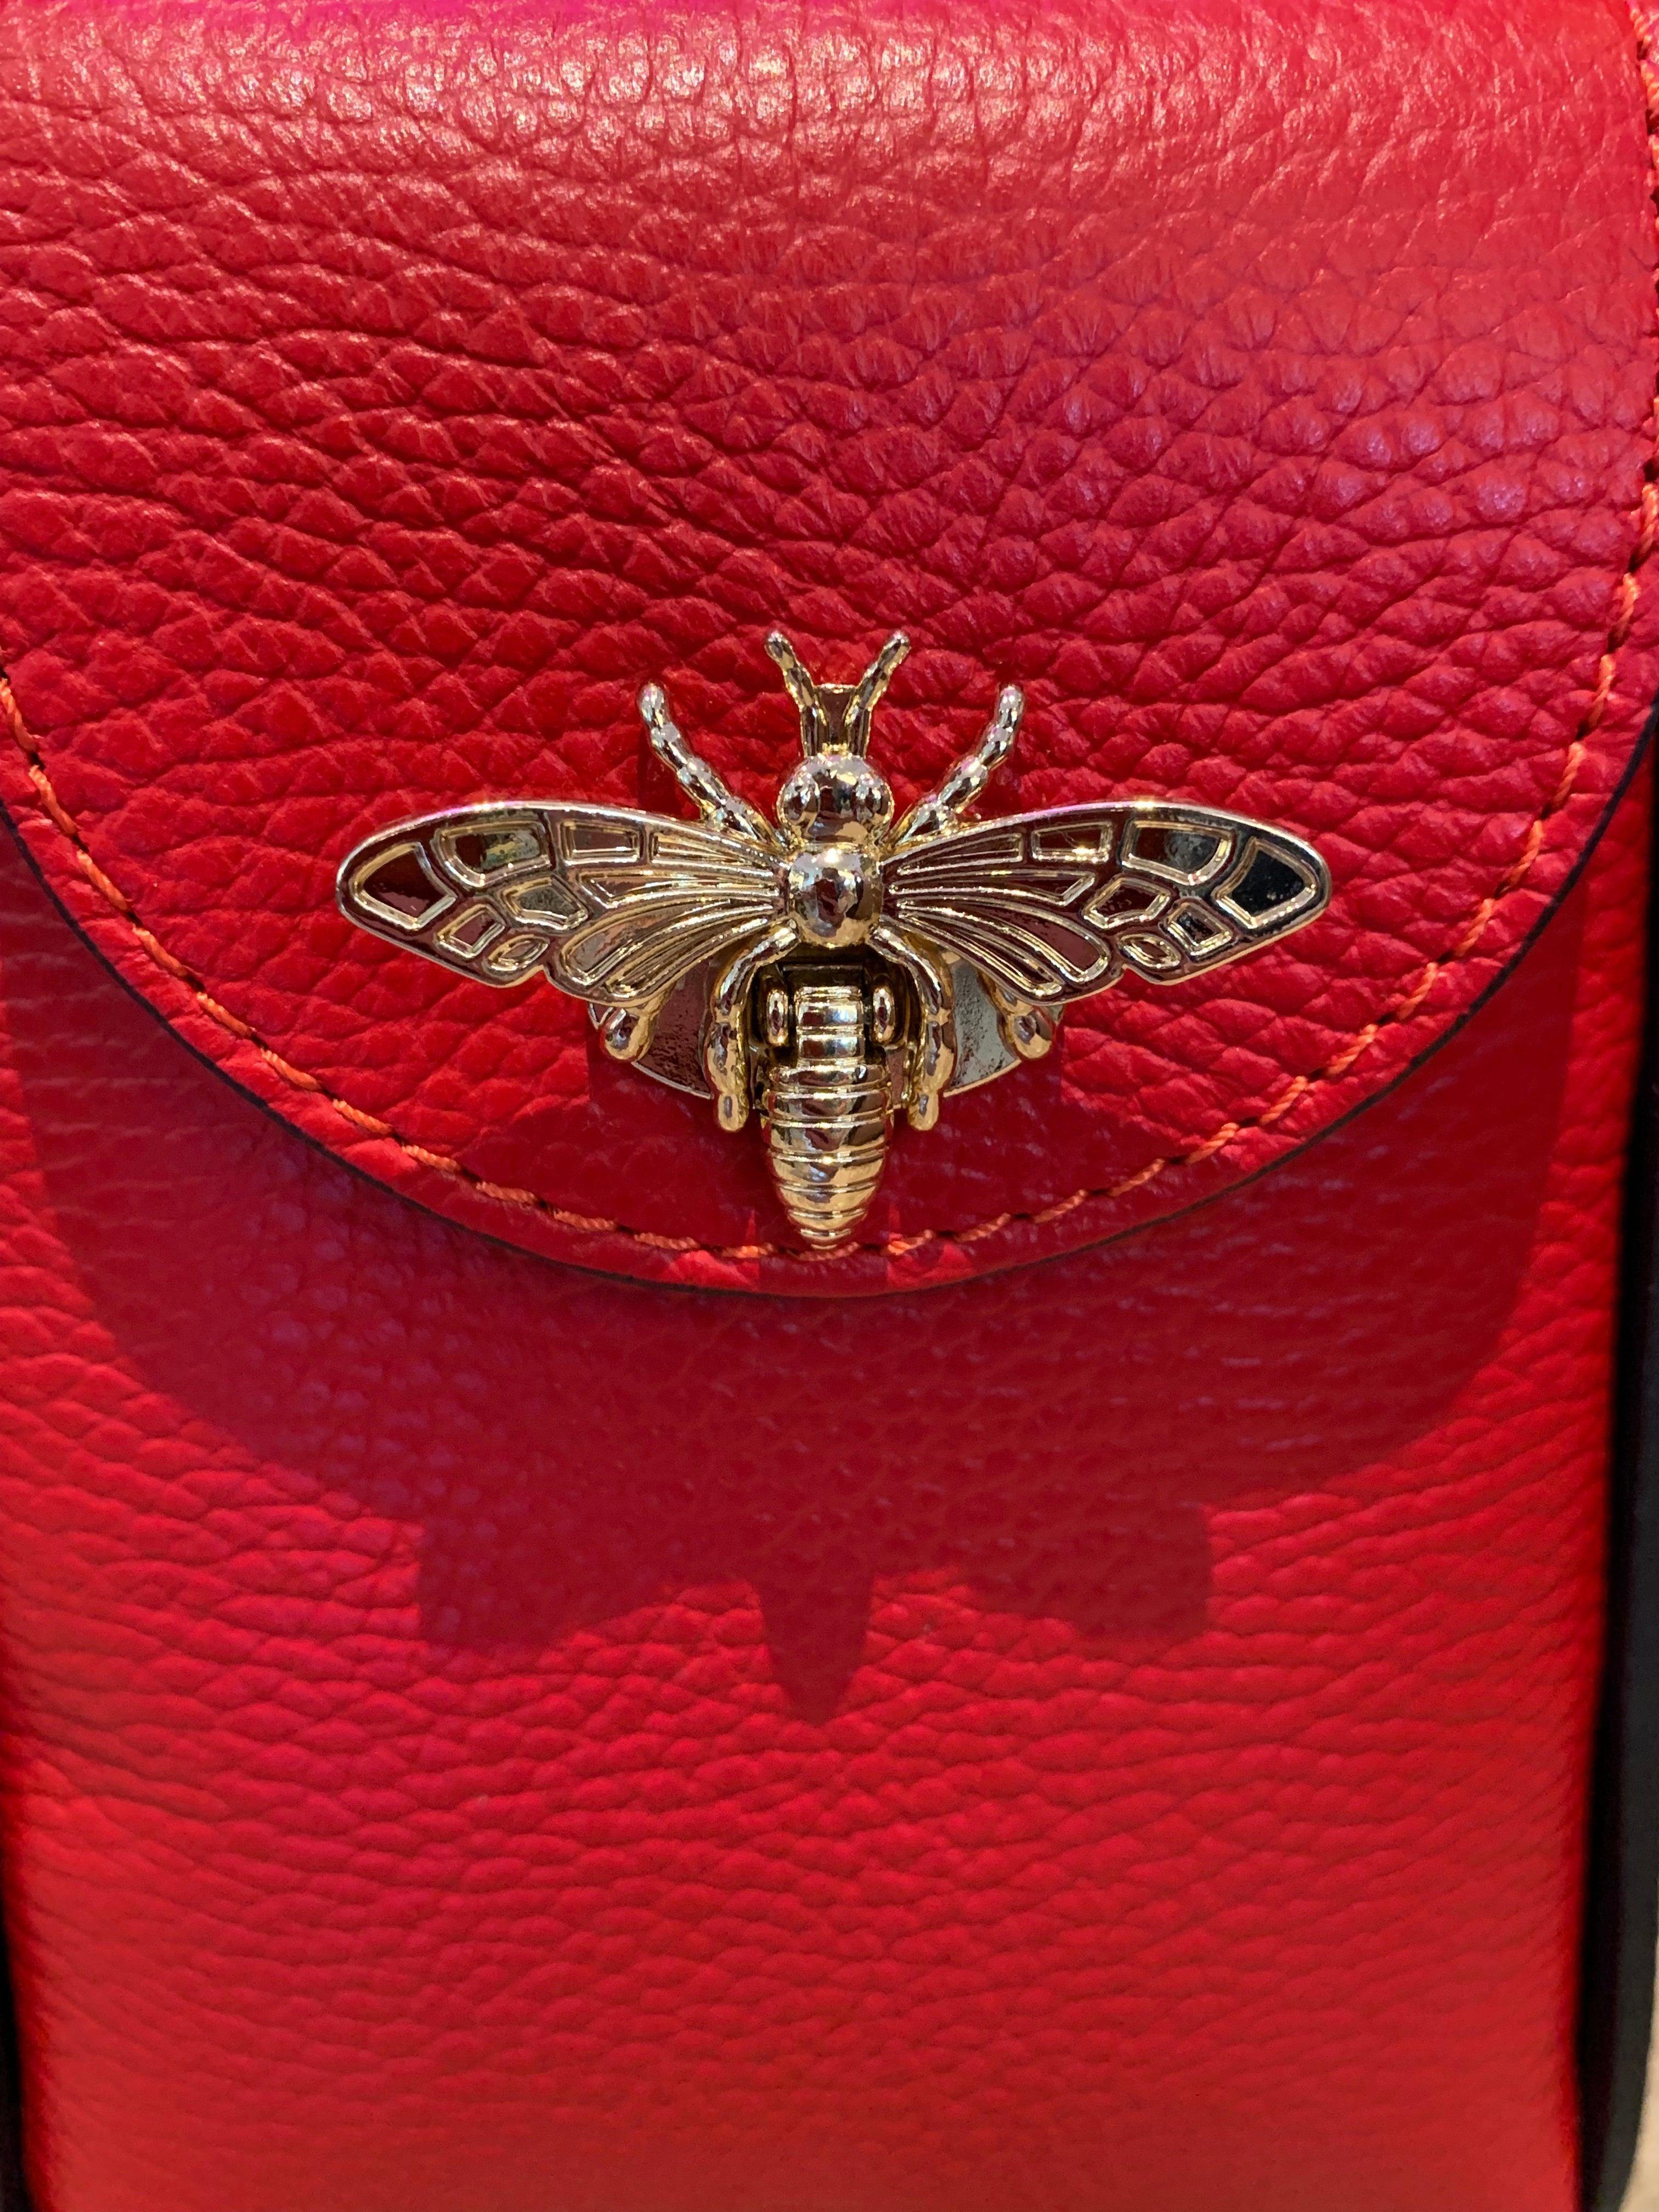 Gucci Bee Embellished Shoulder Bag in Red | Lyst